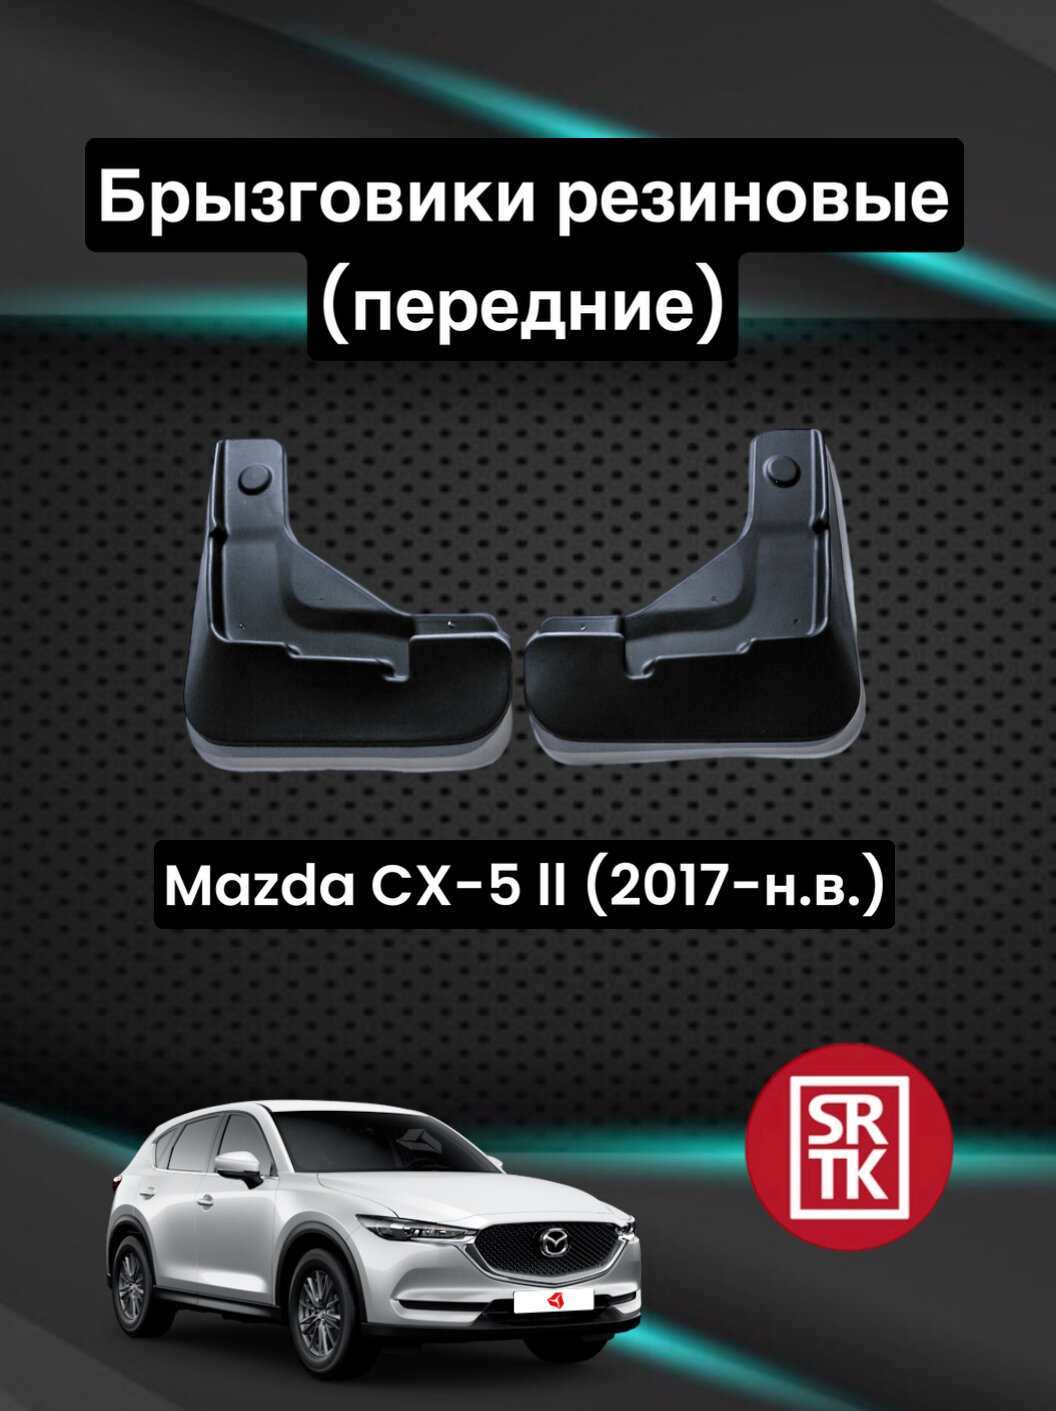 Брызговики резиновые для Mazda CX 5 II (2017-) / Брызговики автомобильные для Мазда СХ-5 2 / Передние